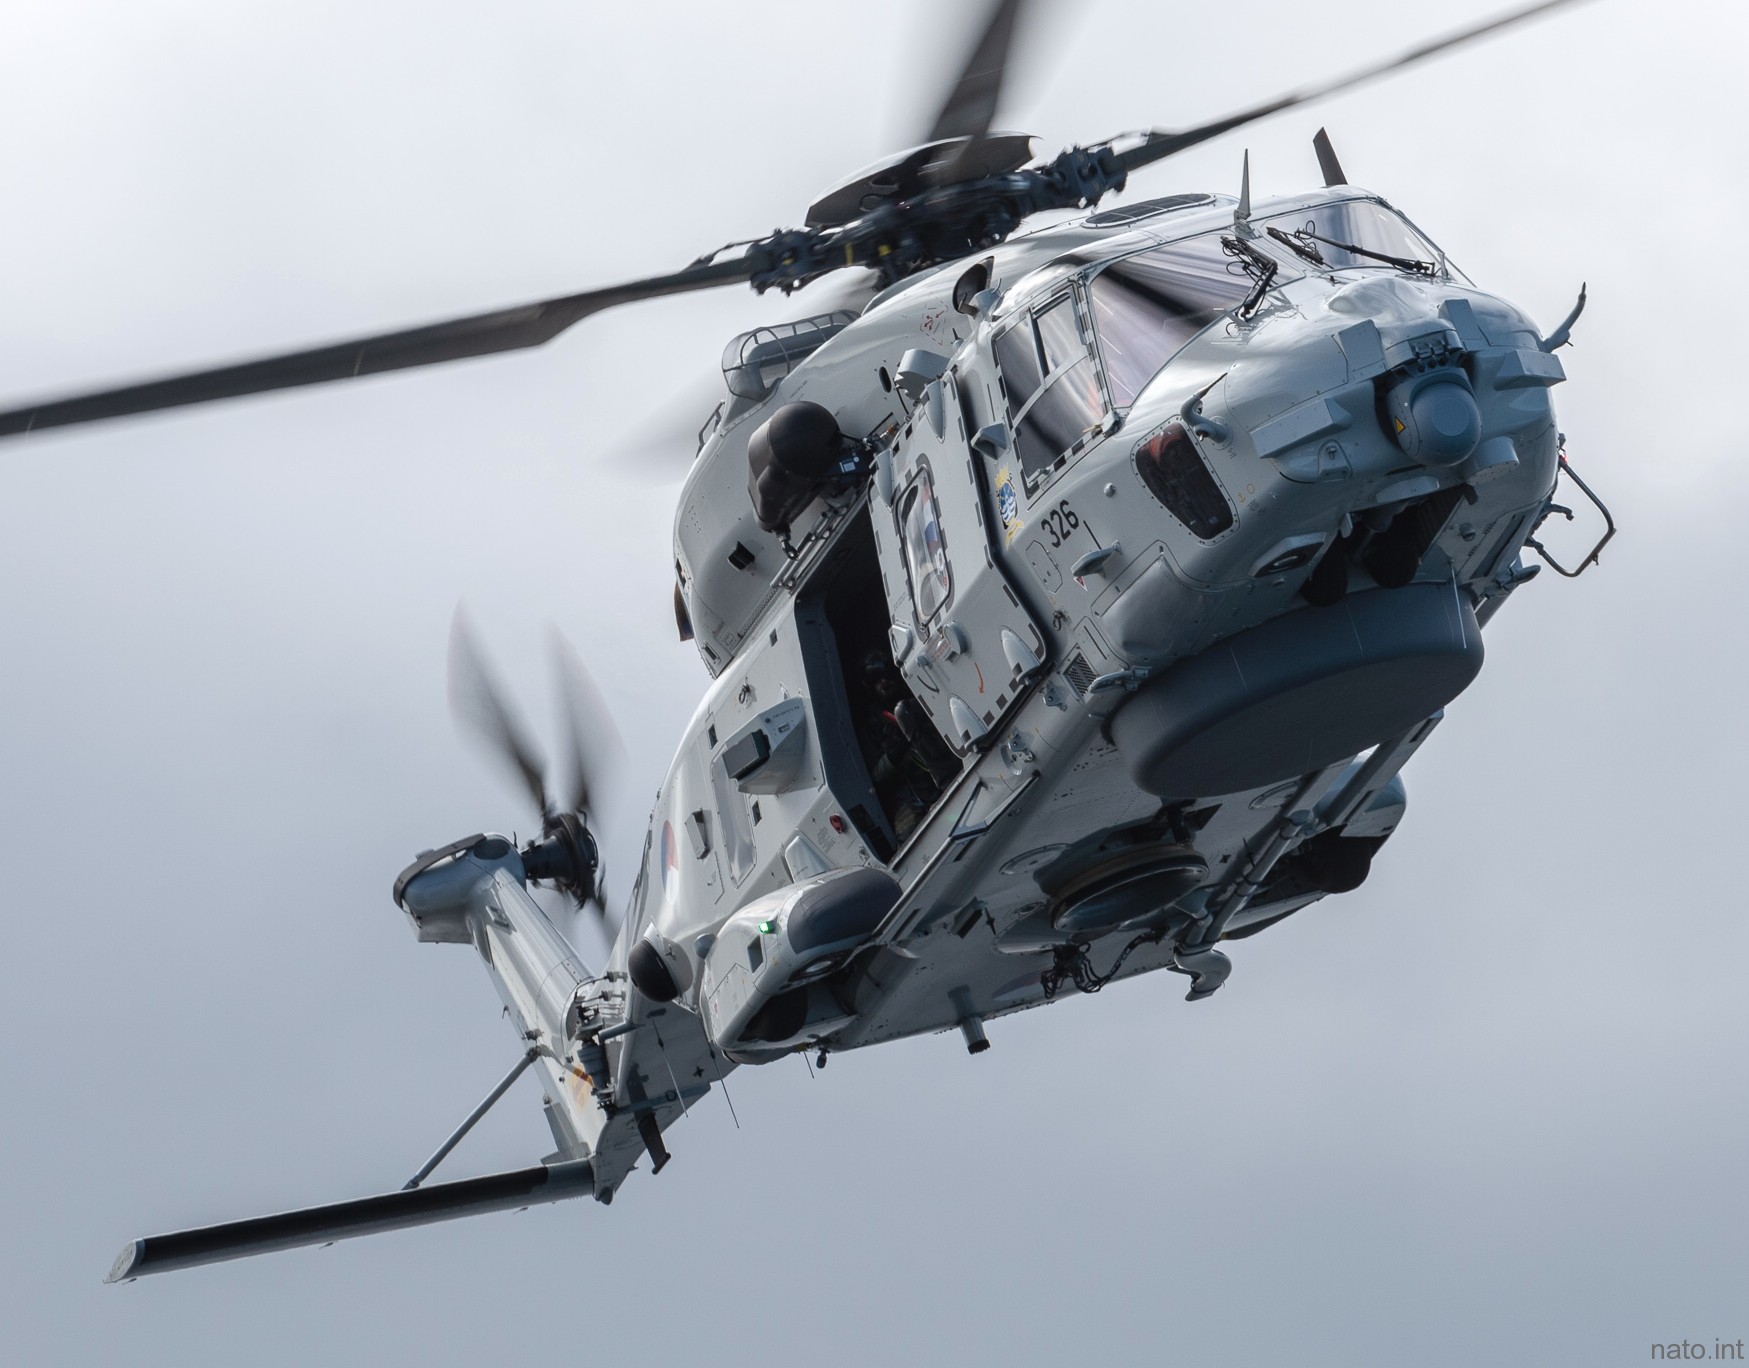 nh90 nfh helicopter royal netherlands navy koninklijke marine n-326 08